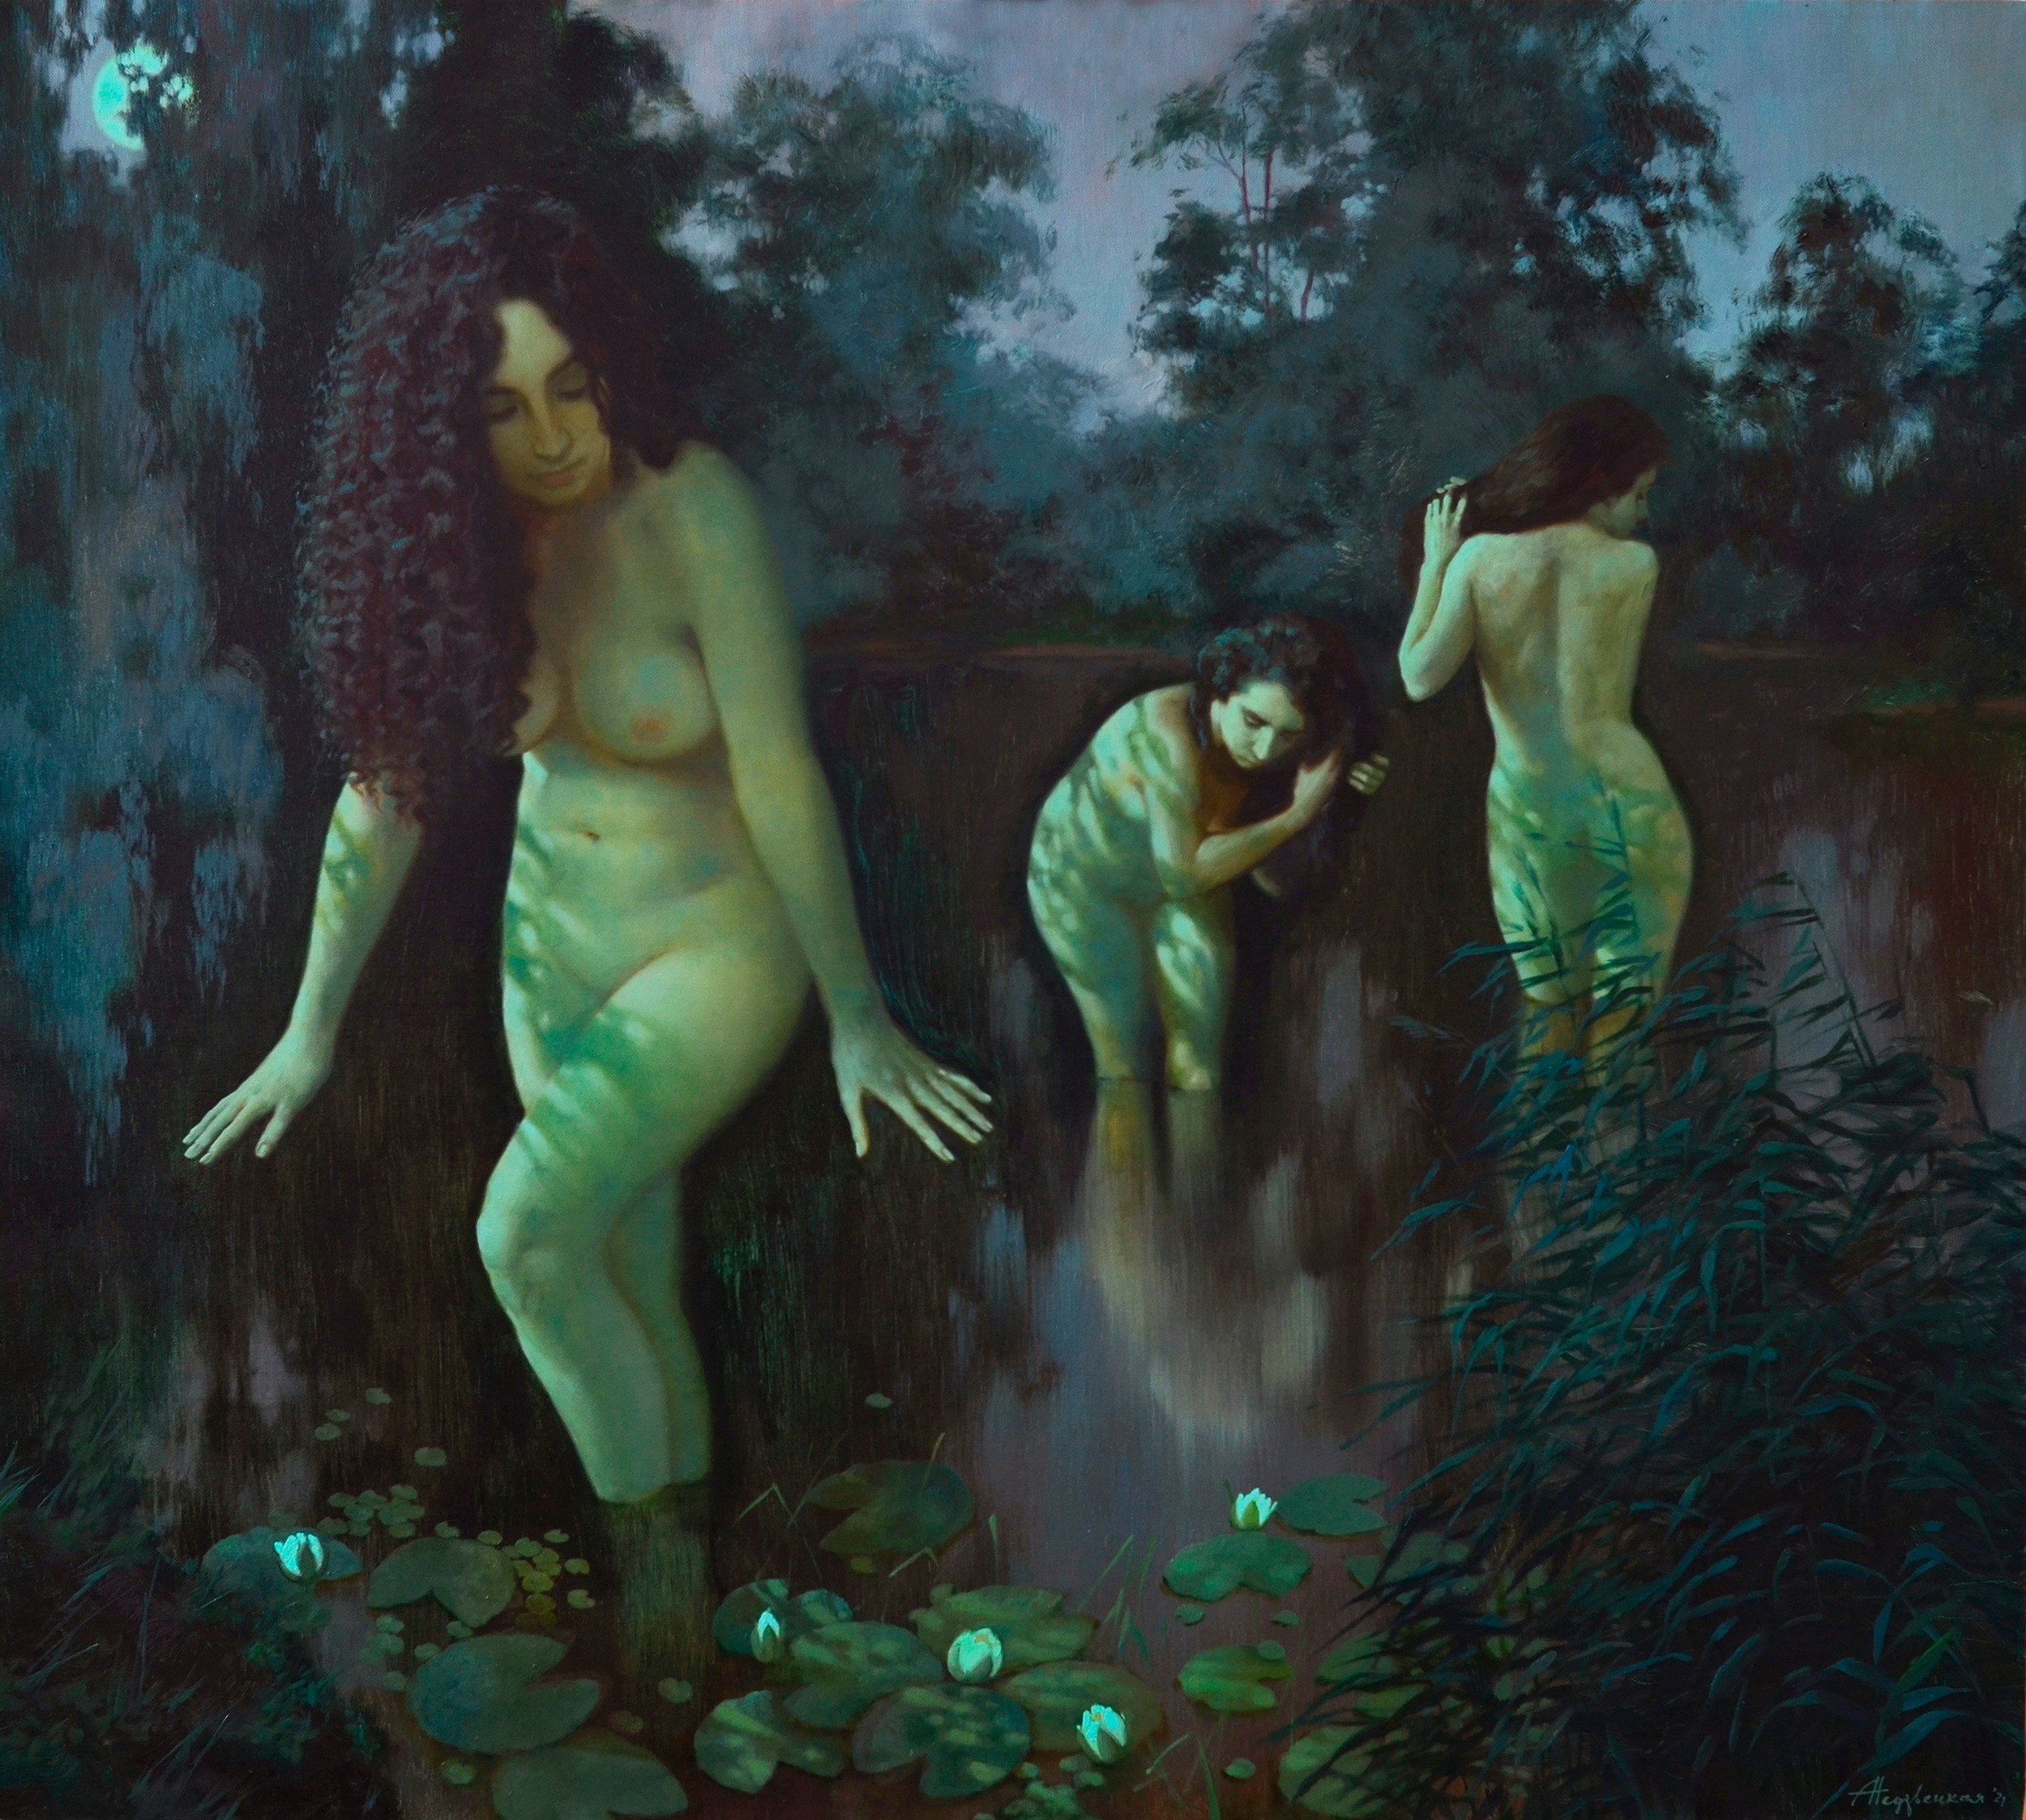 Night bathers - 1, Alexandra Nedzvetskaya, Buy the painting Oil